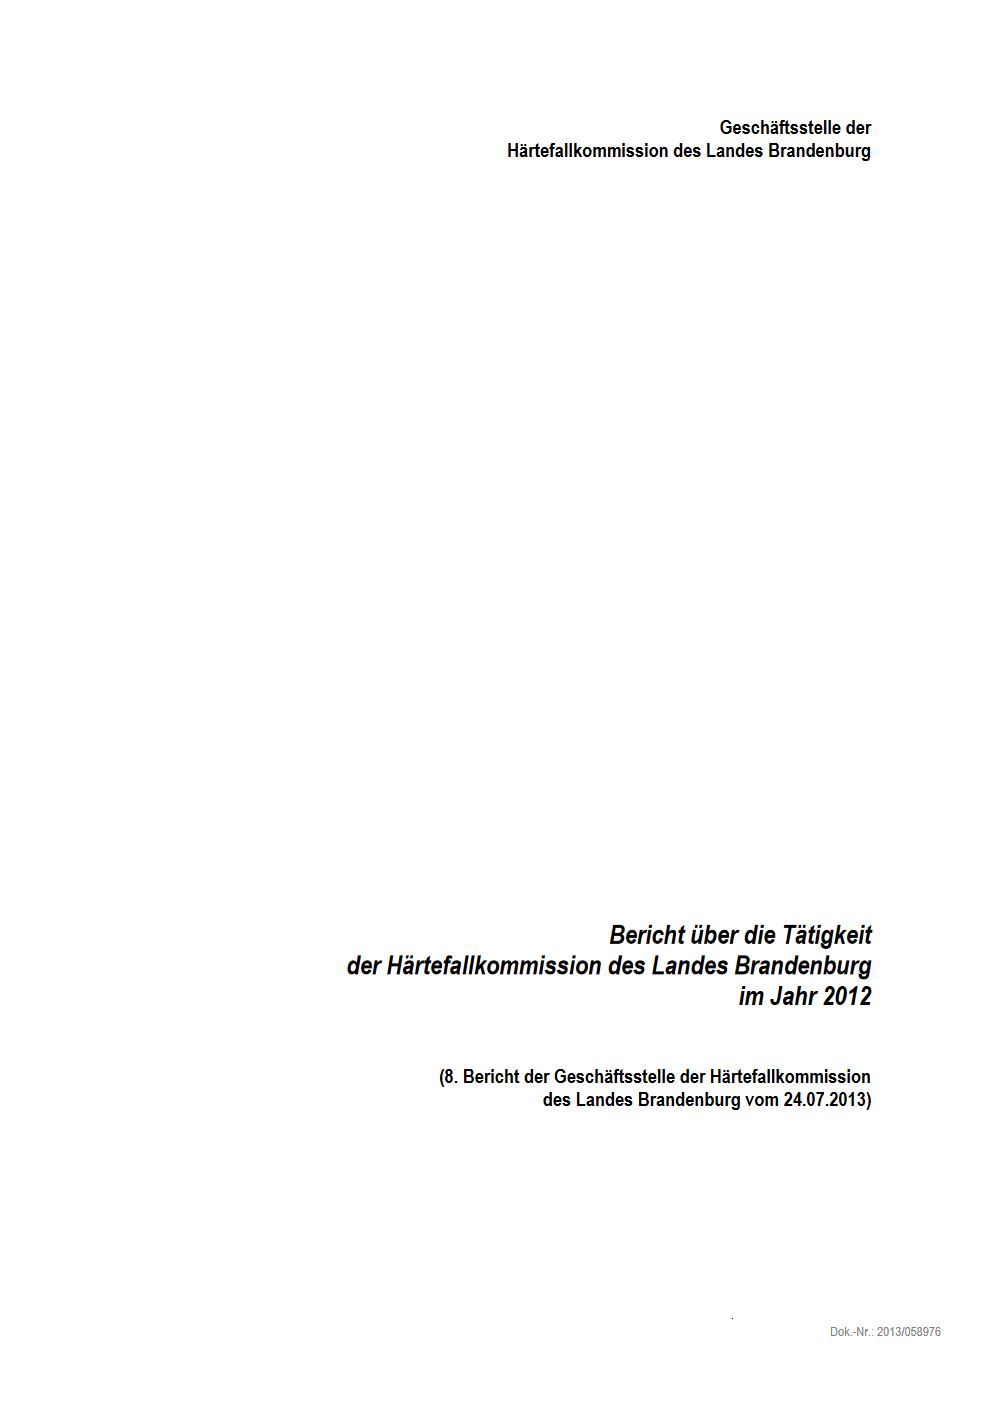 Bild vergrößern (Bild: Härtefallkommission Tätigkeitsbericht 2012)